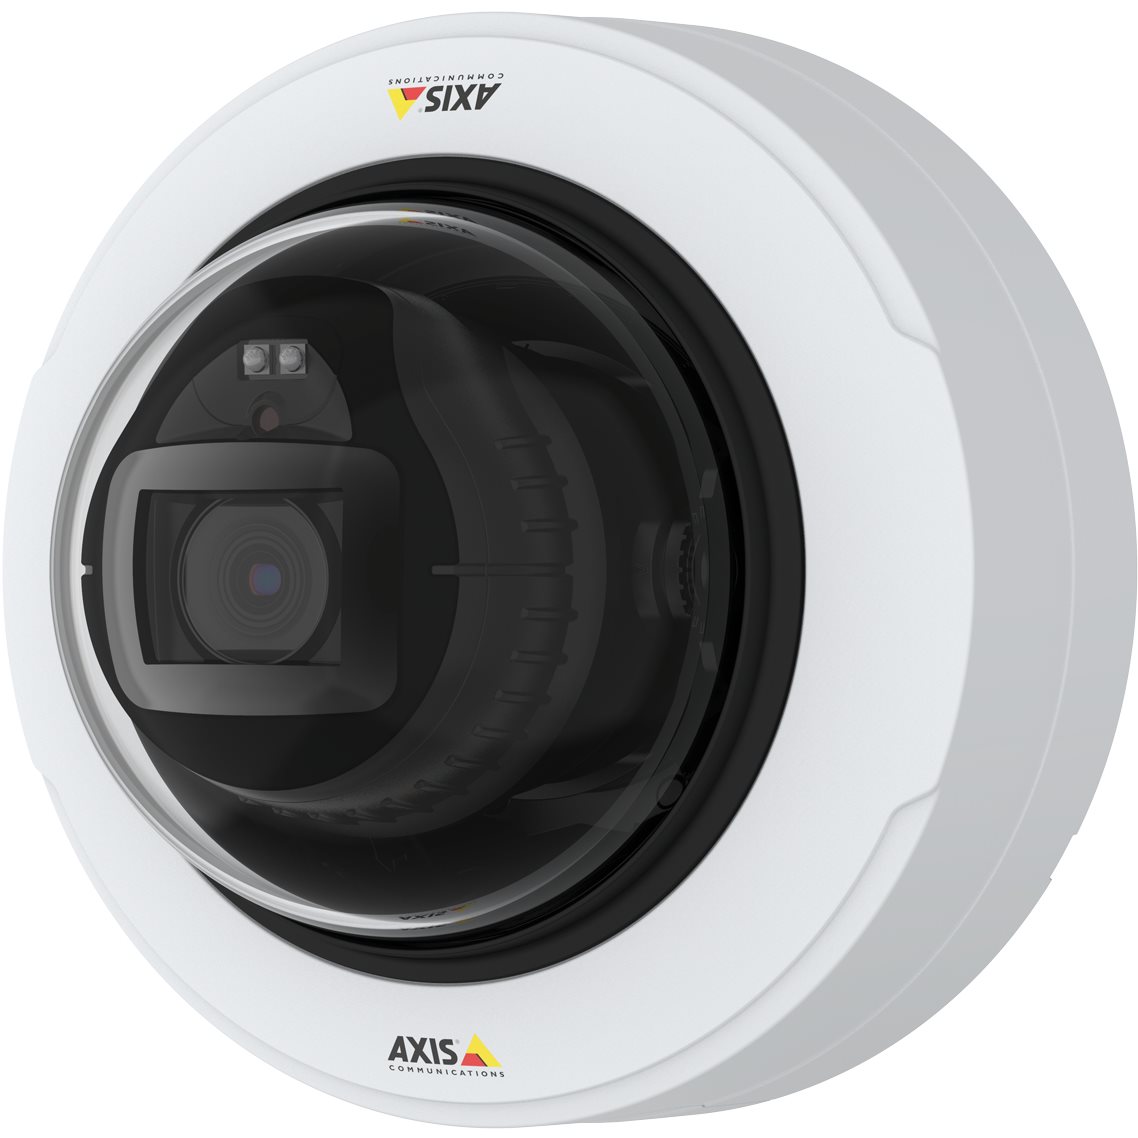   Caméras IP   Caméra Axis P3247-LV 01595-001